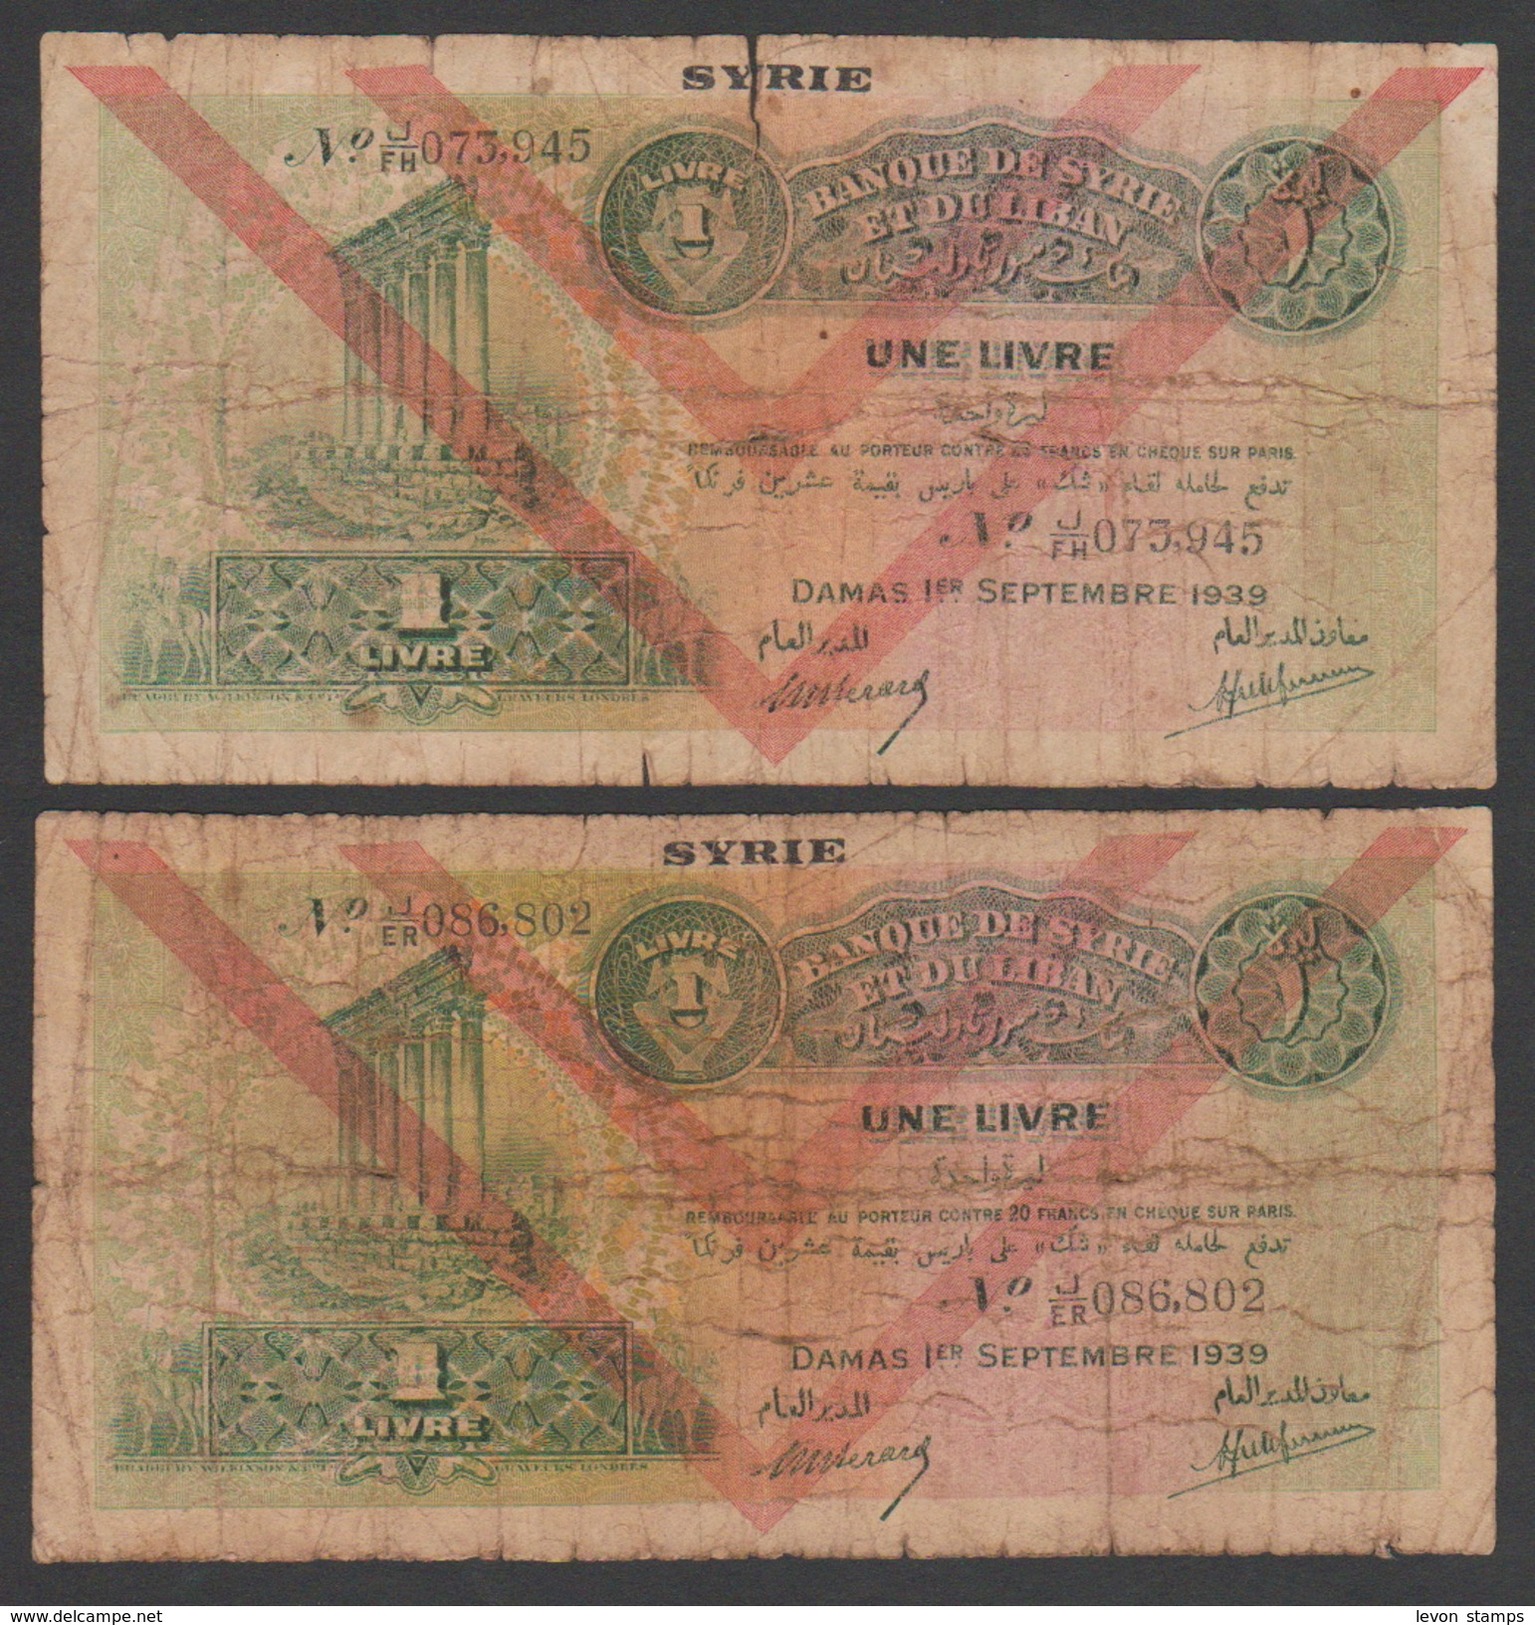 Syria,Syrie, Lebanon,1 Pounds 1939,Two Same Type D, No:40, VG. - Syria